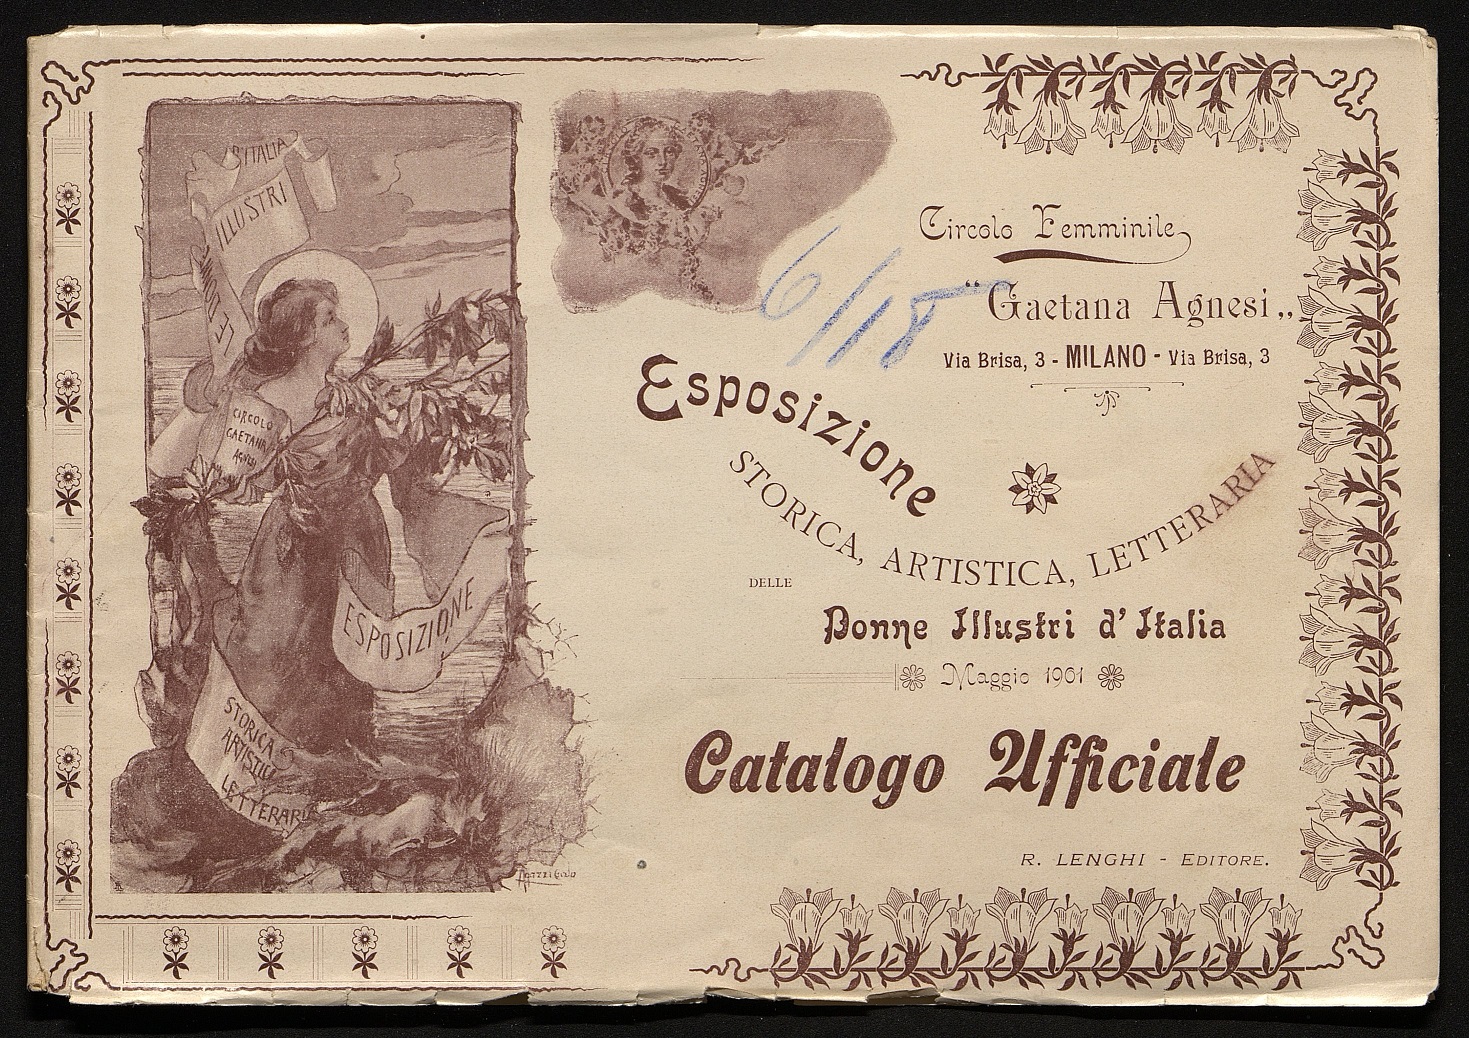 Catalogo ufficiale dell'Esposizione 1901